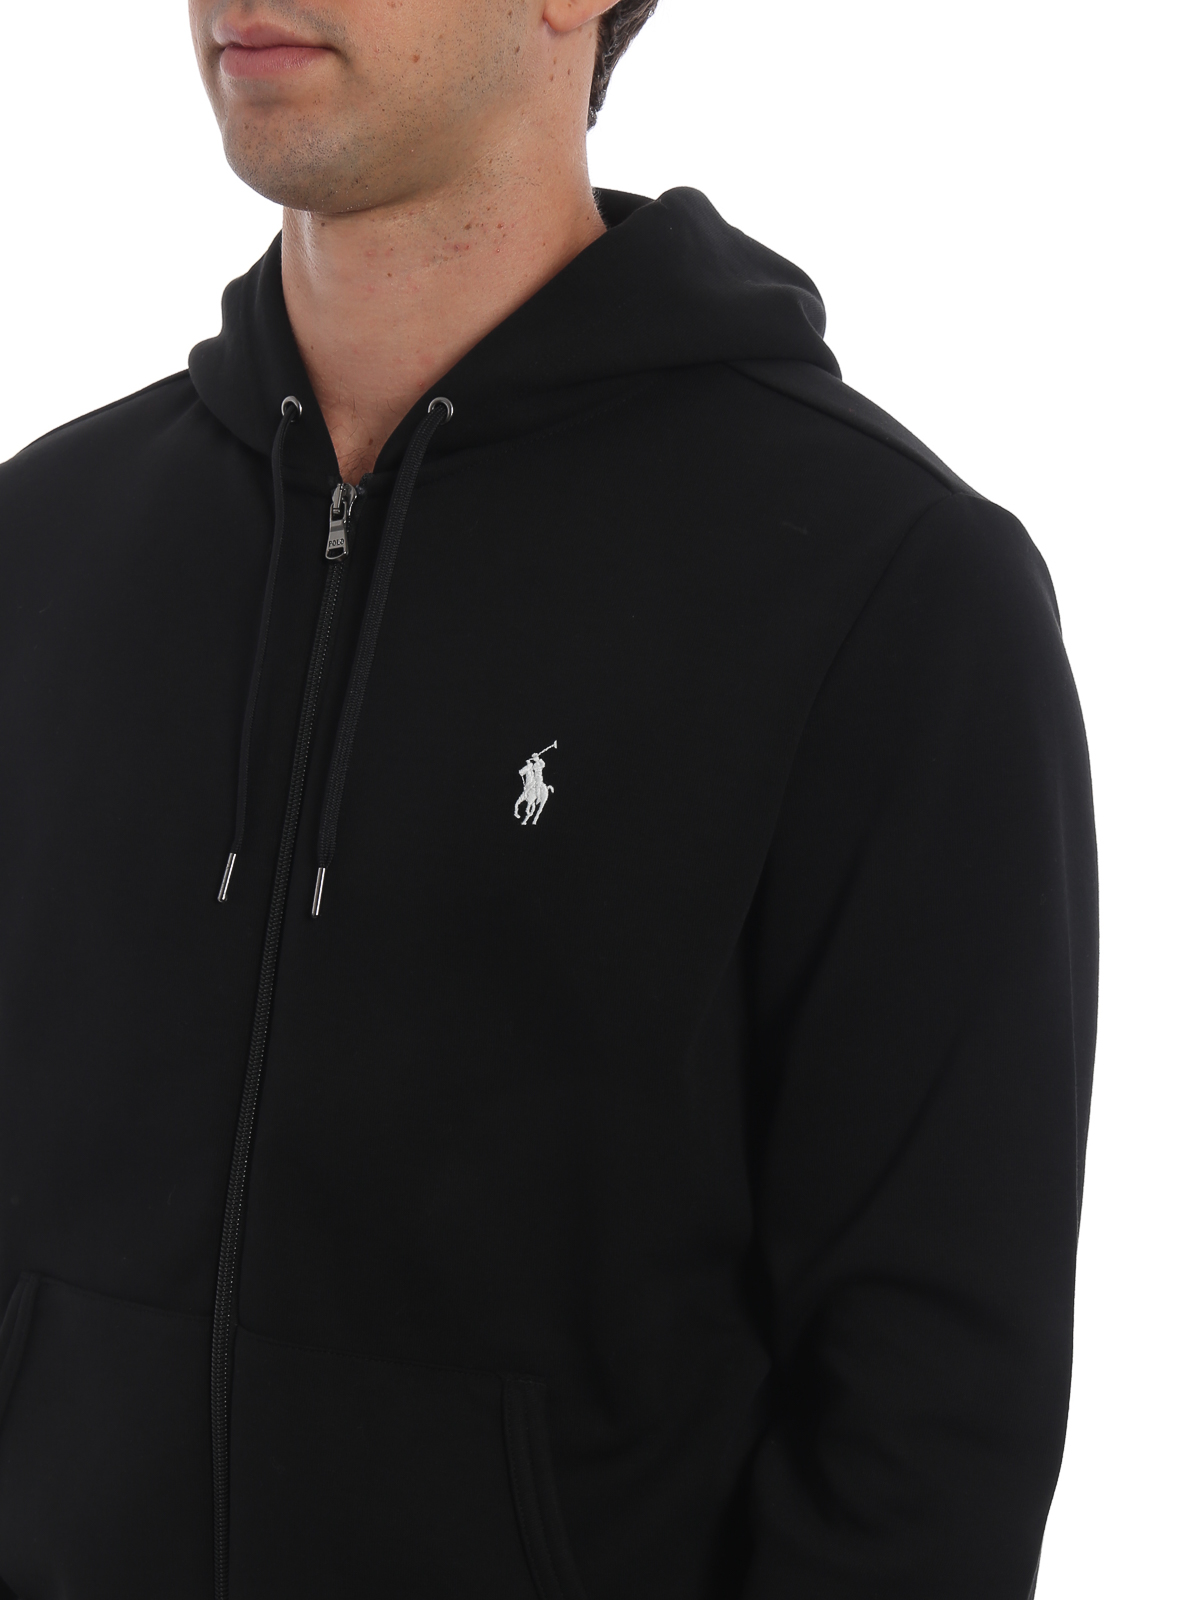 Sweatshirts & Sweaters Polo Ralph Lauren - Black full zip hoodie -  710652313001